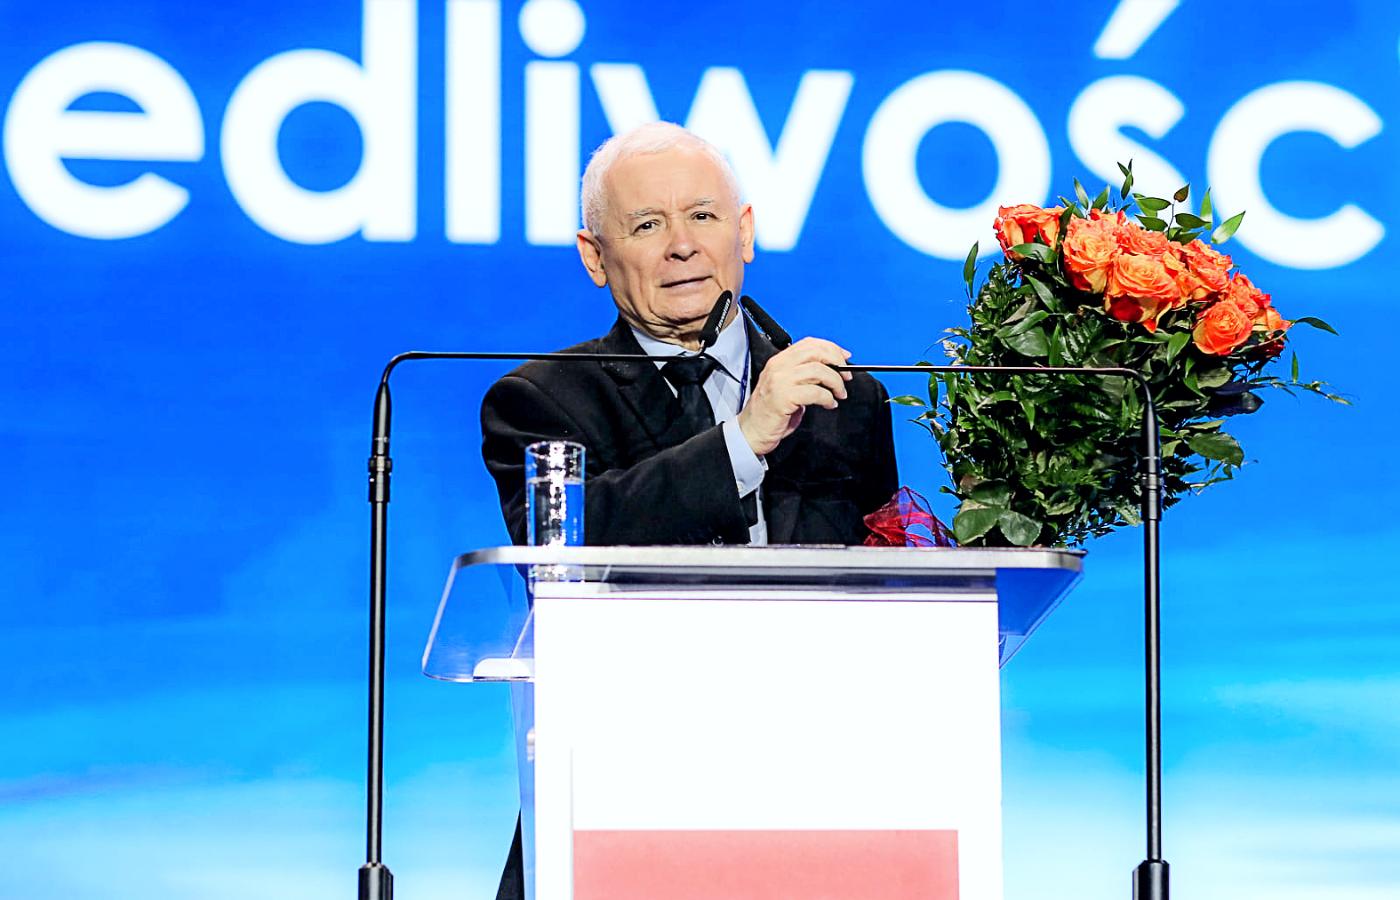 Prezes PiS i wicepremier odpowiedzialny za bezpieczeństwo Jarosław Kaczyński